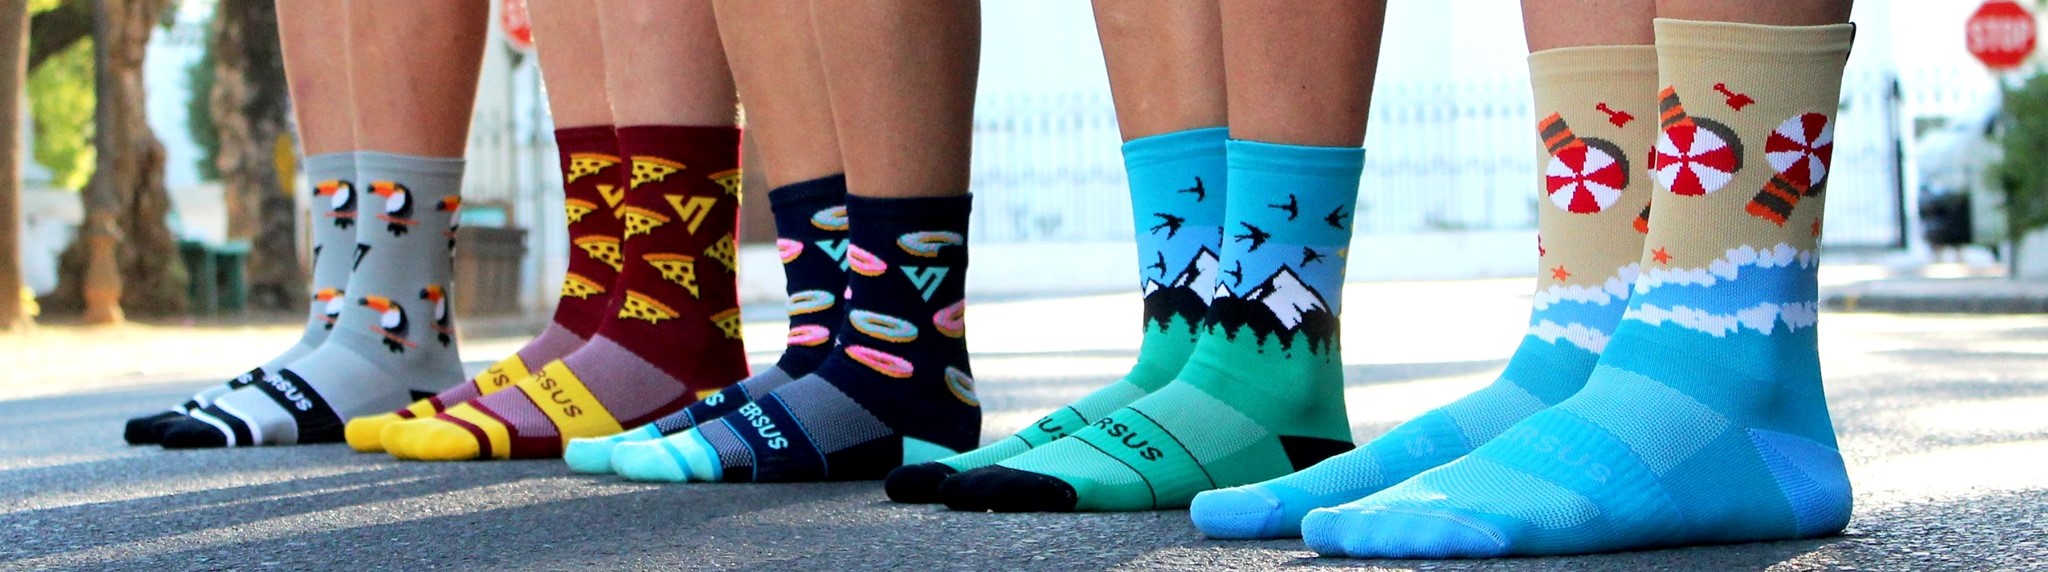 sportovní ponožky versus socks versussocks.cz